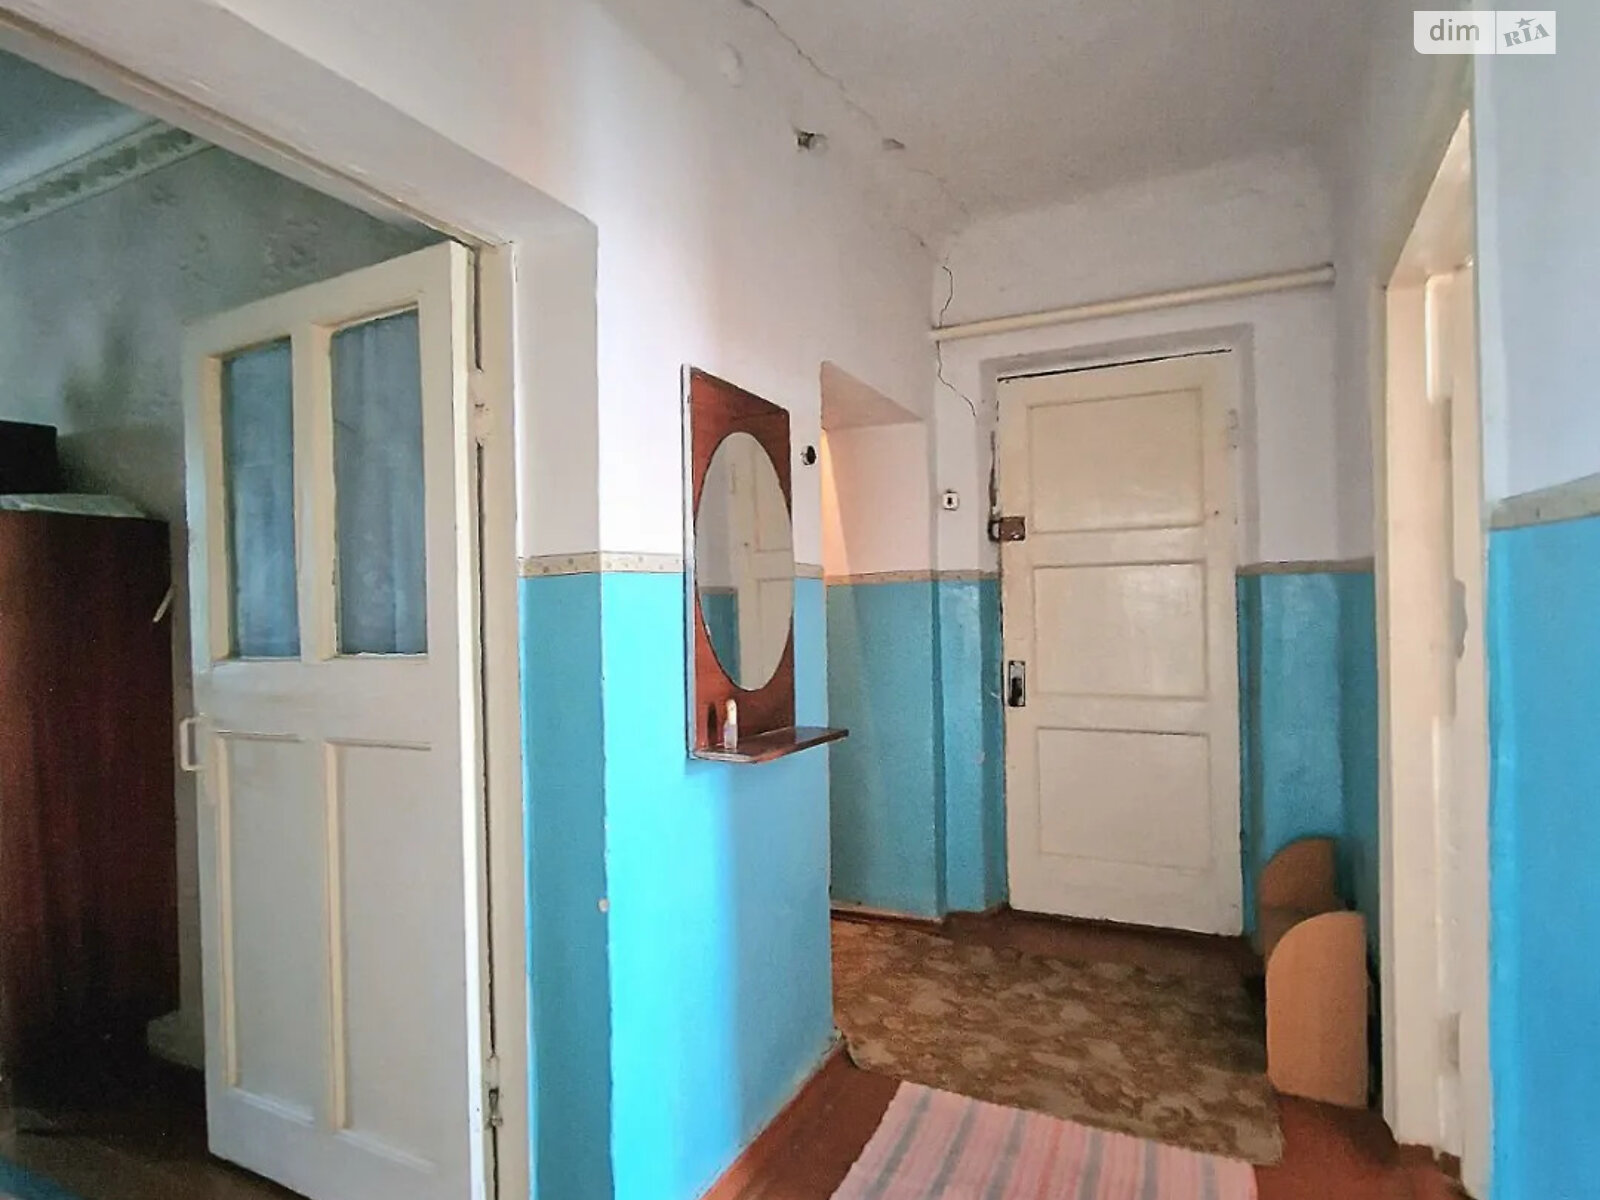 Продажа части дома в Устимовке, улица Железнодорожная, 3 комнаты фото 1